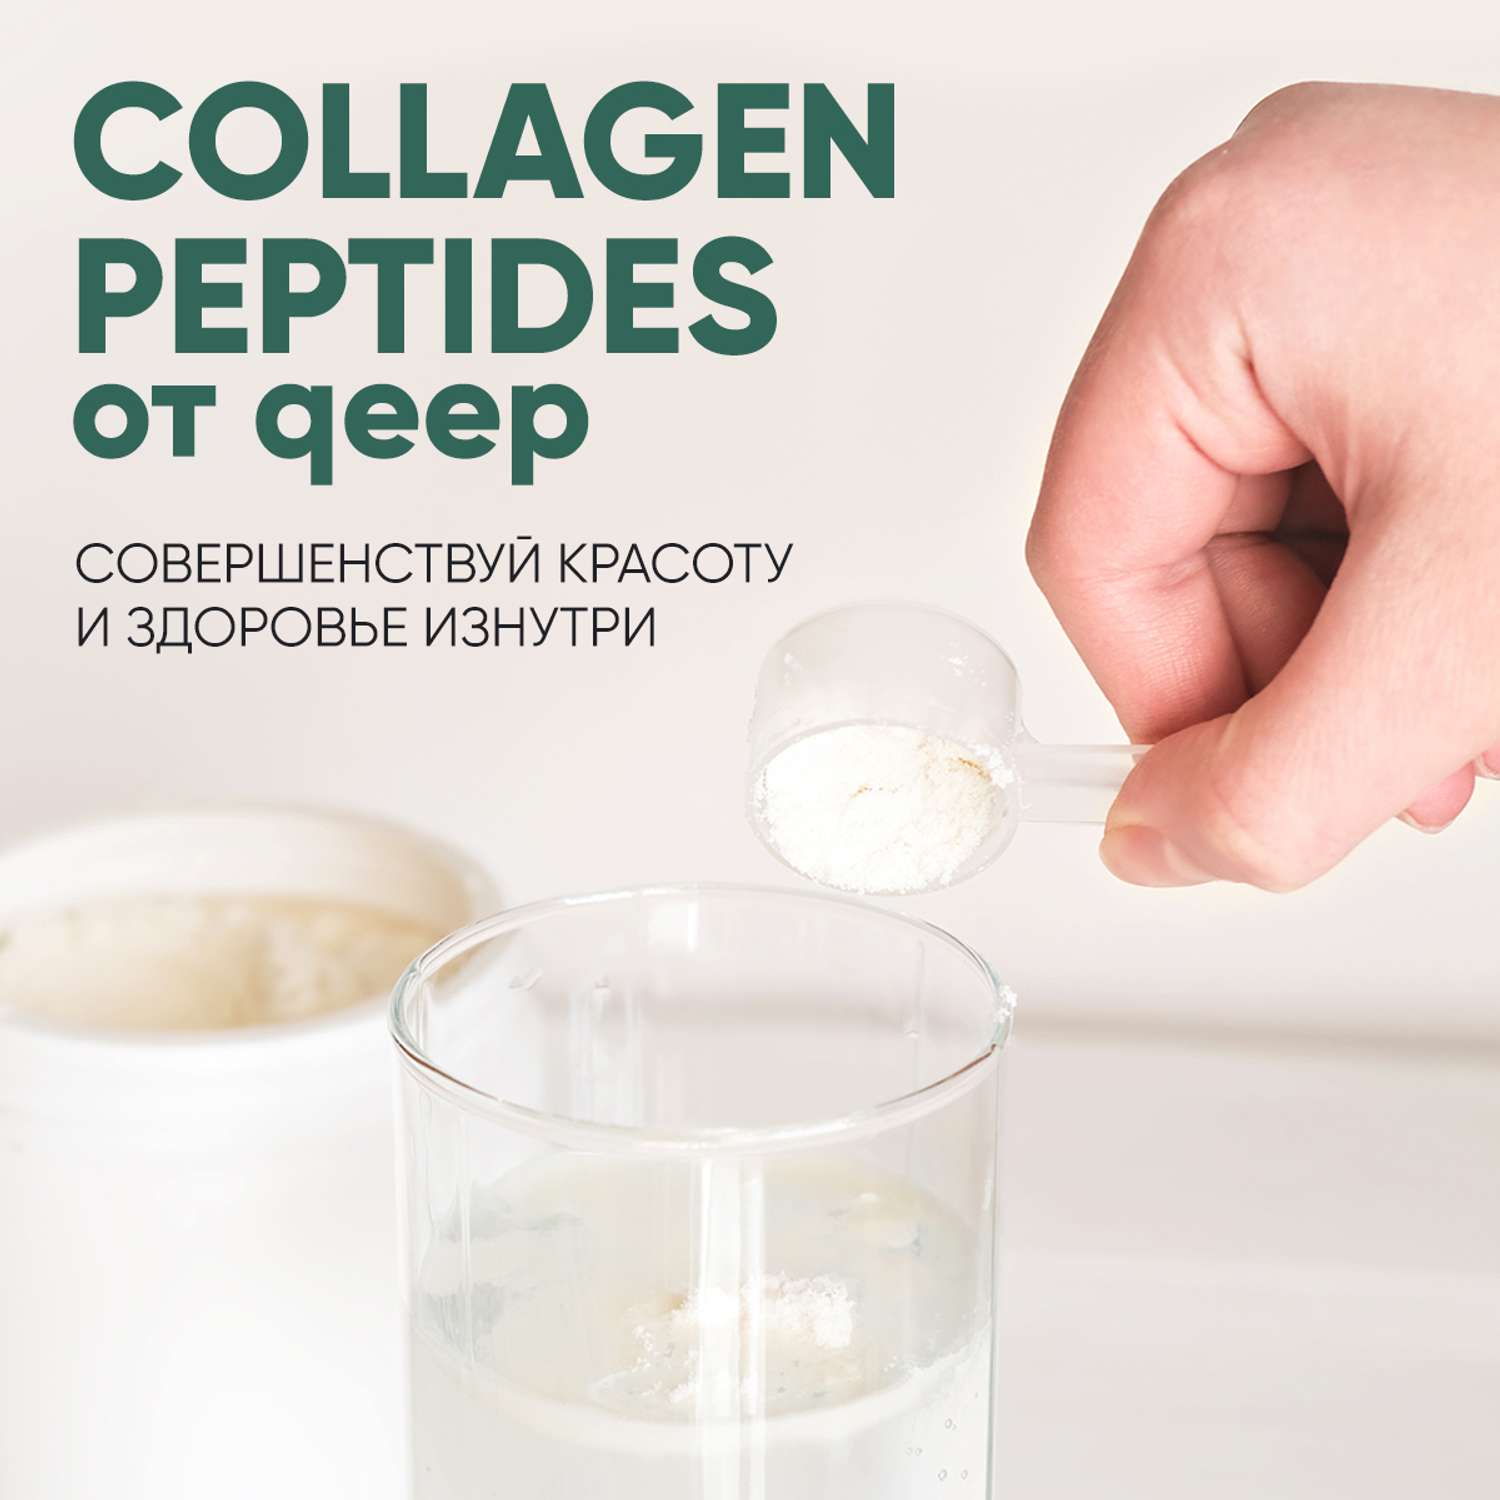 Коллаген порошок qeep пептидный collagen peptides порошок - фото 8